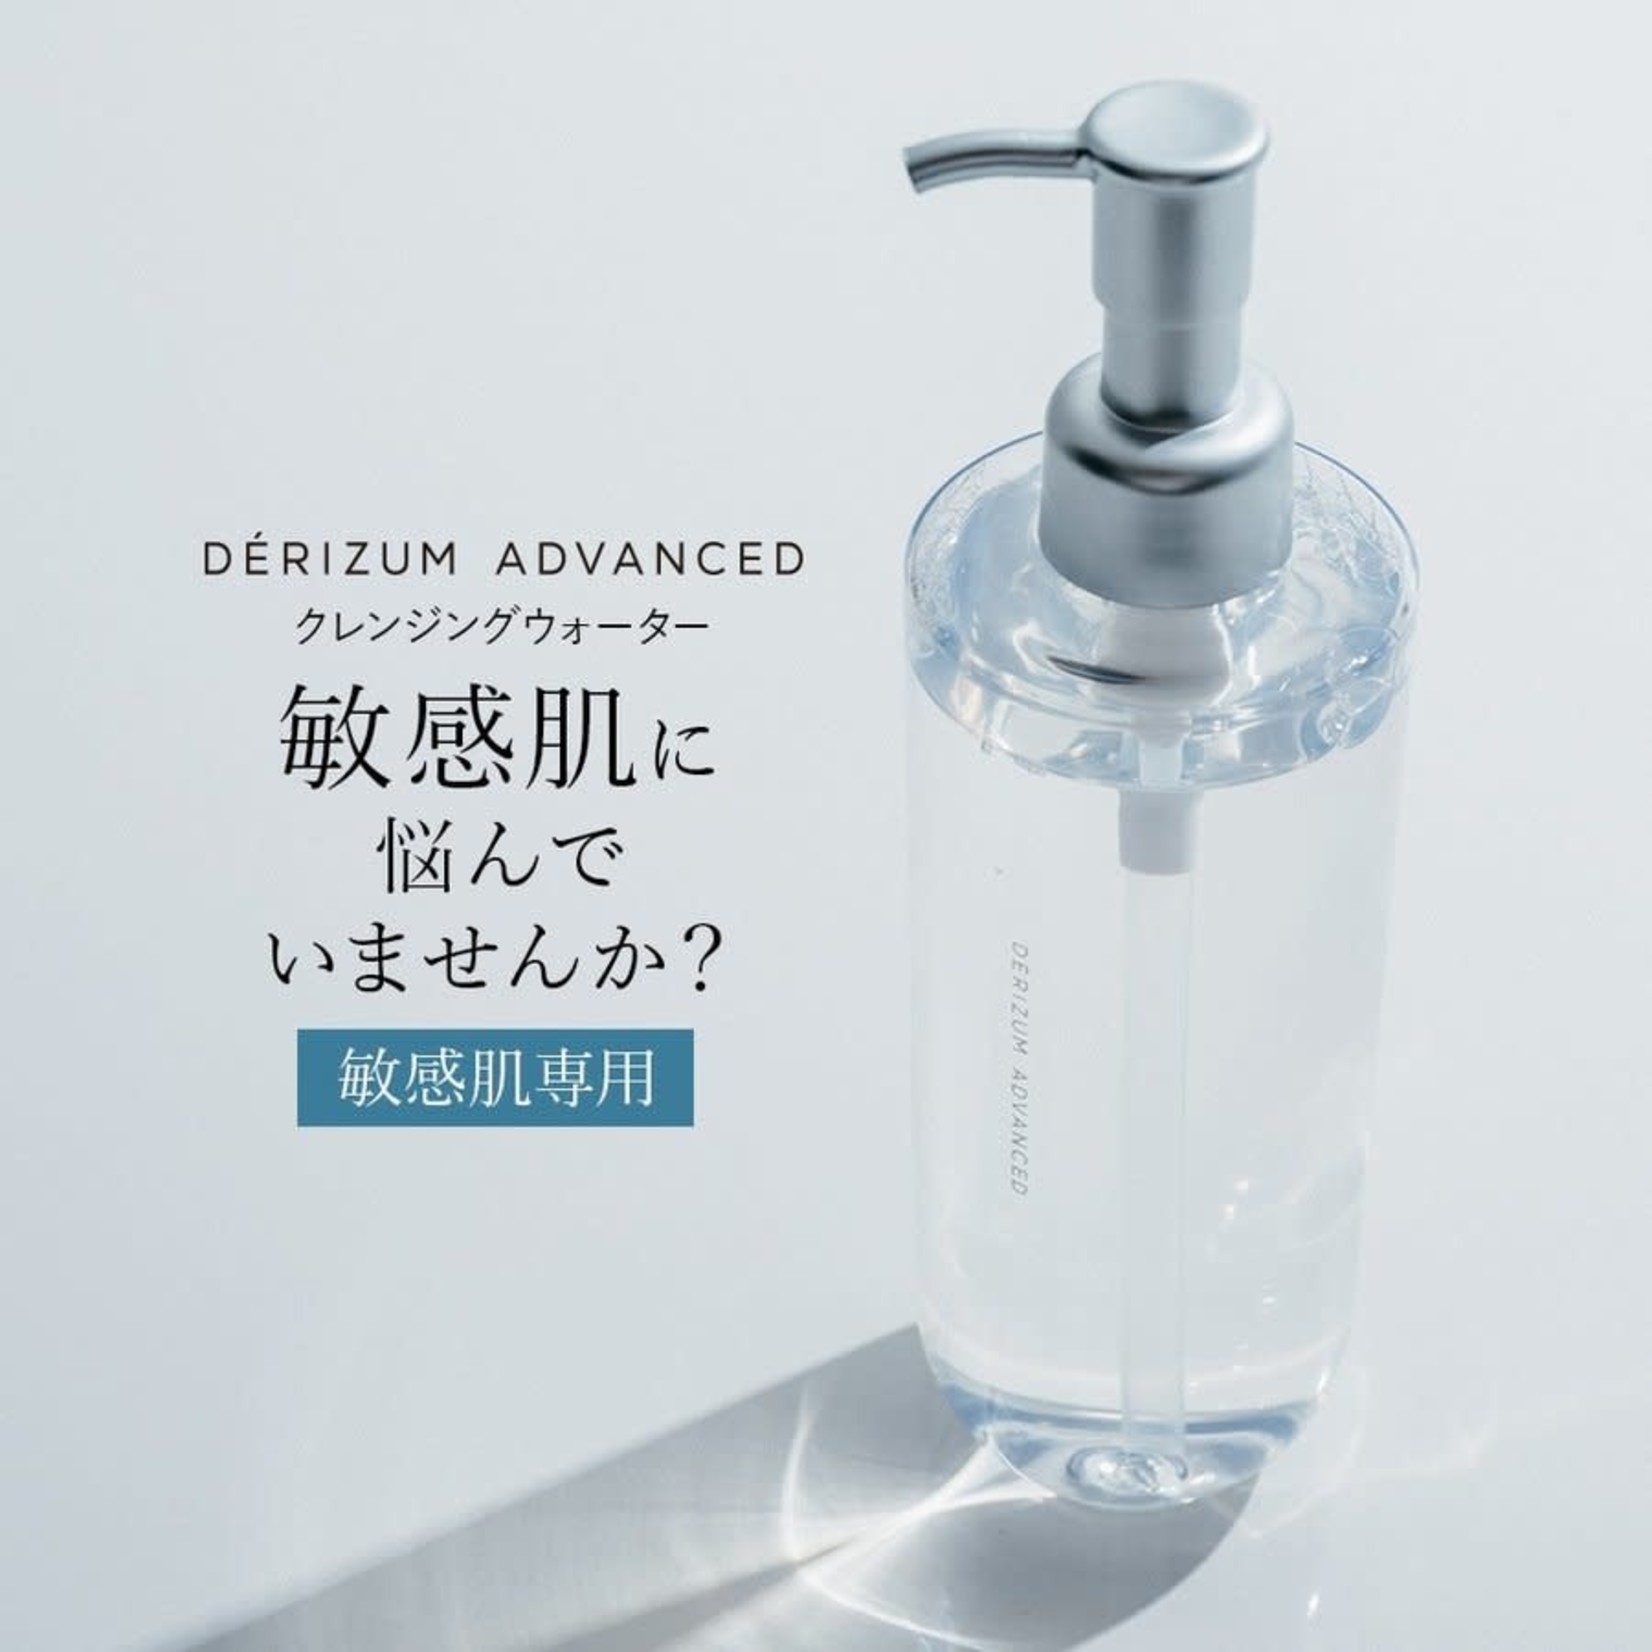 Derizum Derizum Advanced Cleansing Water